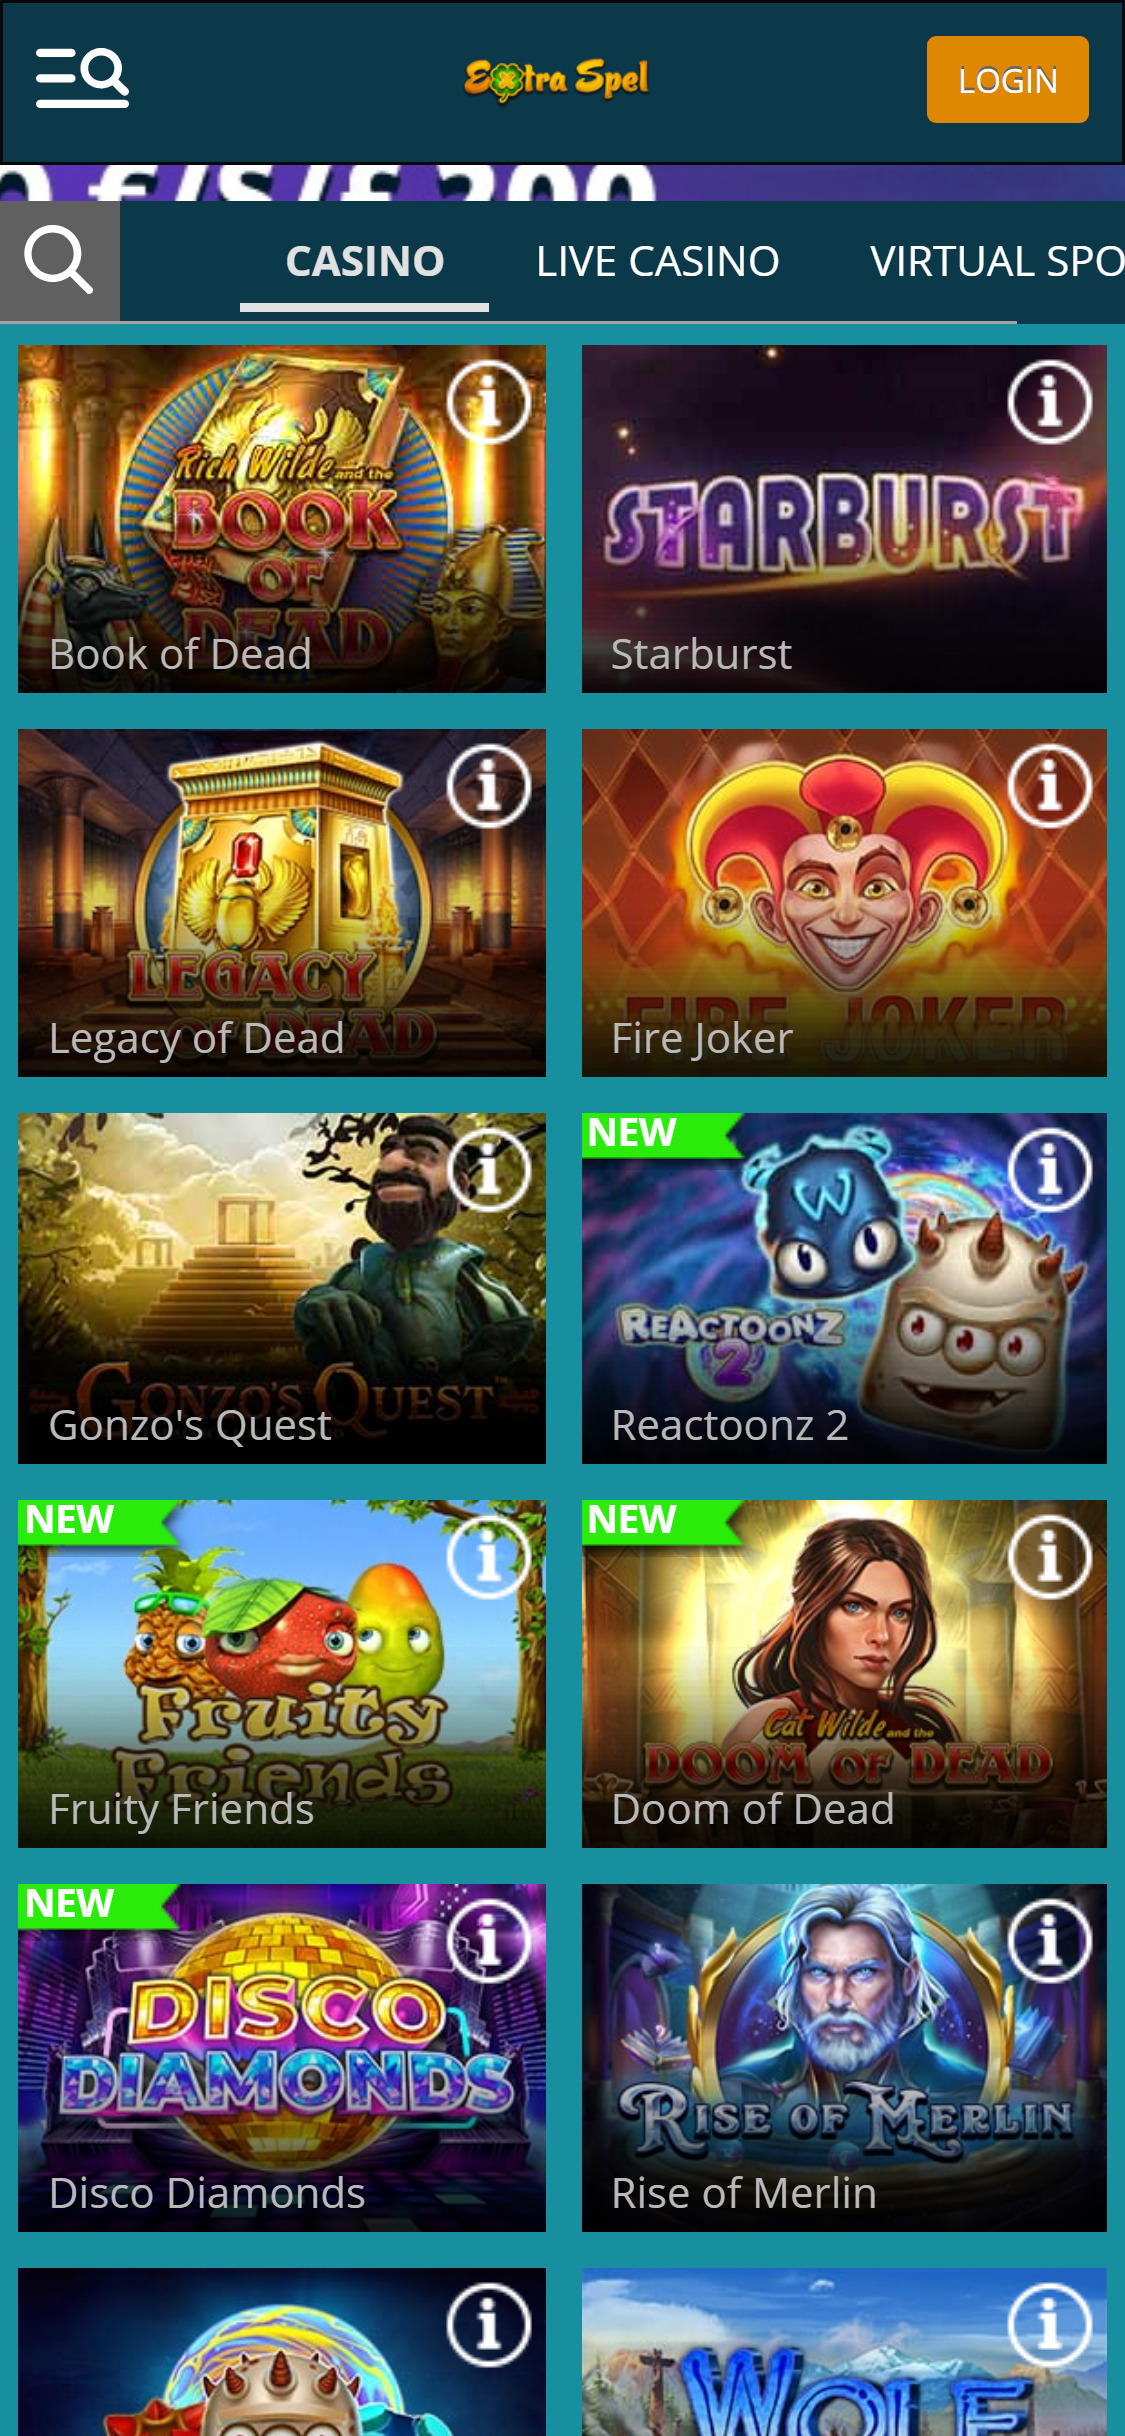 Extra Spel Casino Mobile Games Review